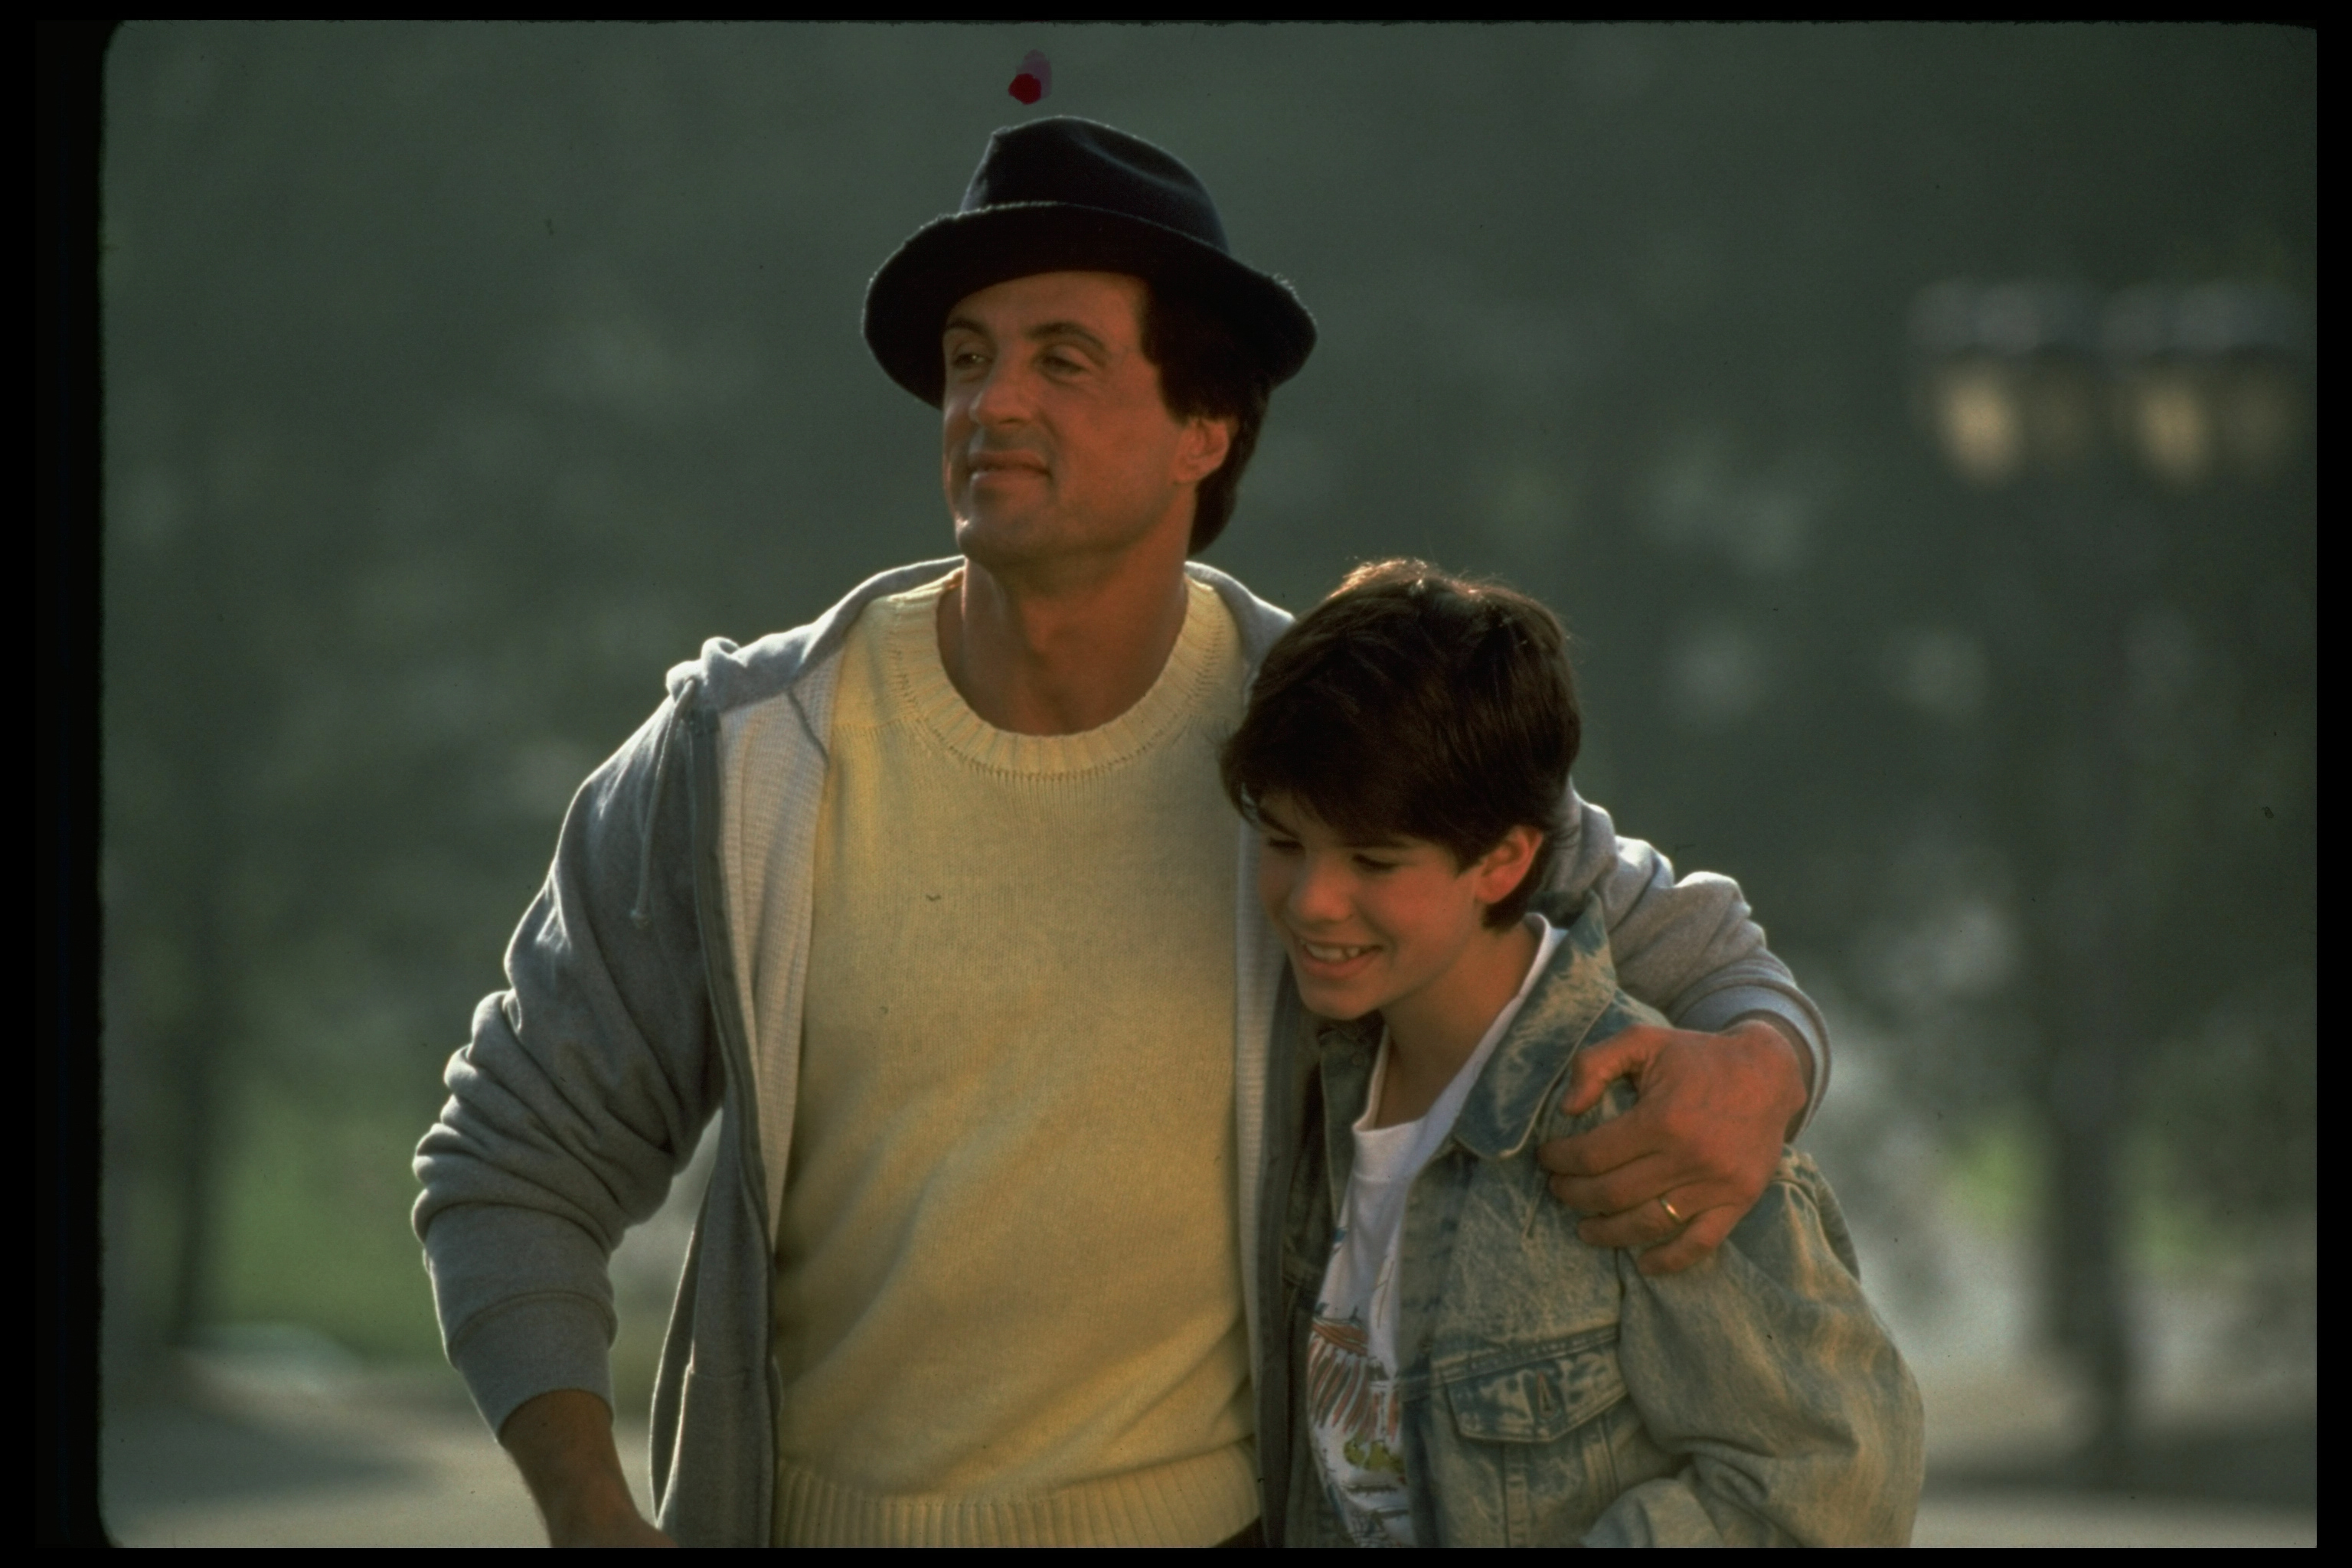 Le garçon et son père sur le tournage du film "Rocky V" de MGM/UA en 1990. | Source : Getty Images